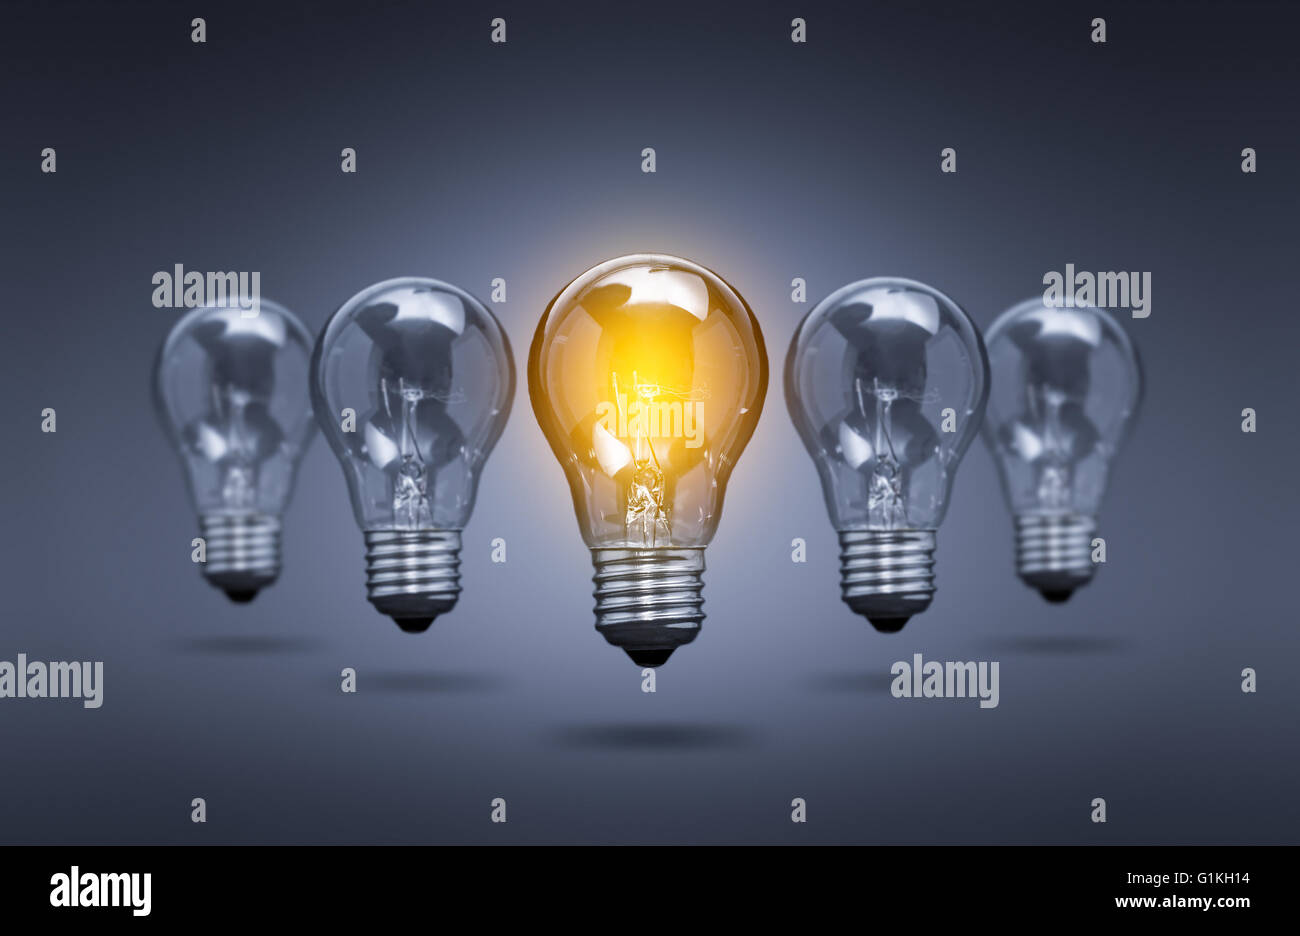 Lampadina luce di idee creative innovazioni leader - Immagine di stock Foto Stock